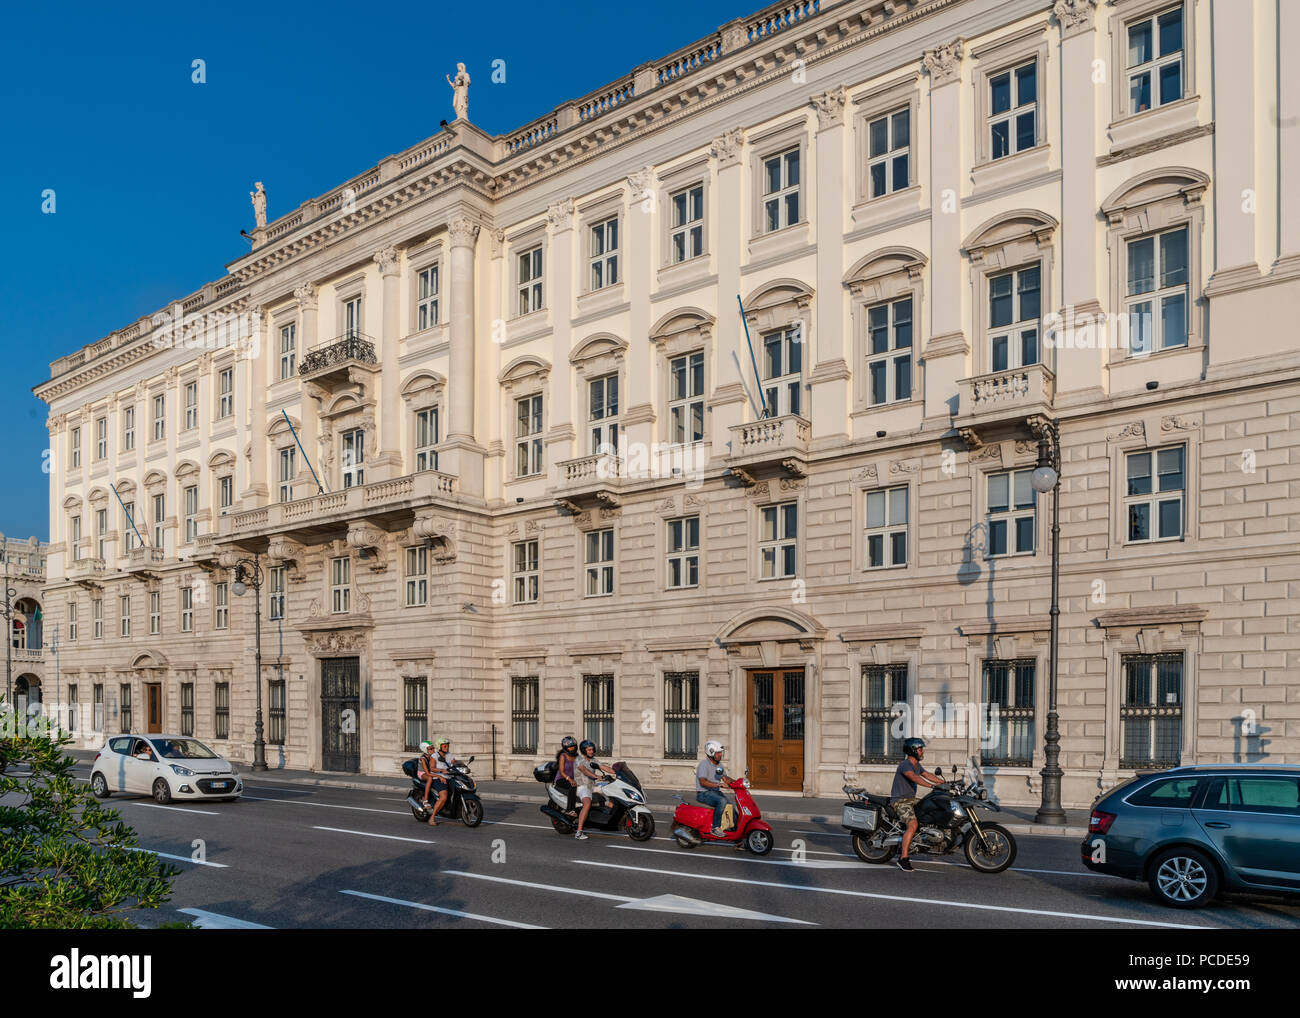 Trieste, 31 luglio 2018. Il traffico normale (principalmente motocicli) in Le Rive, il viale principale del mare nel centro di Trieste, Italia. Foto di Enriqu Foto Stock